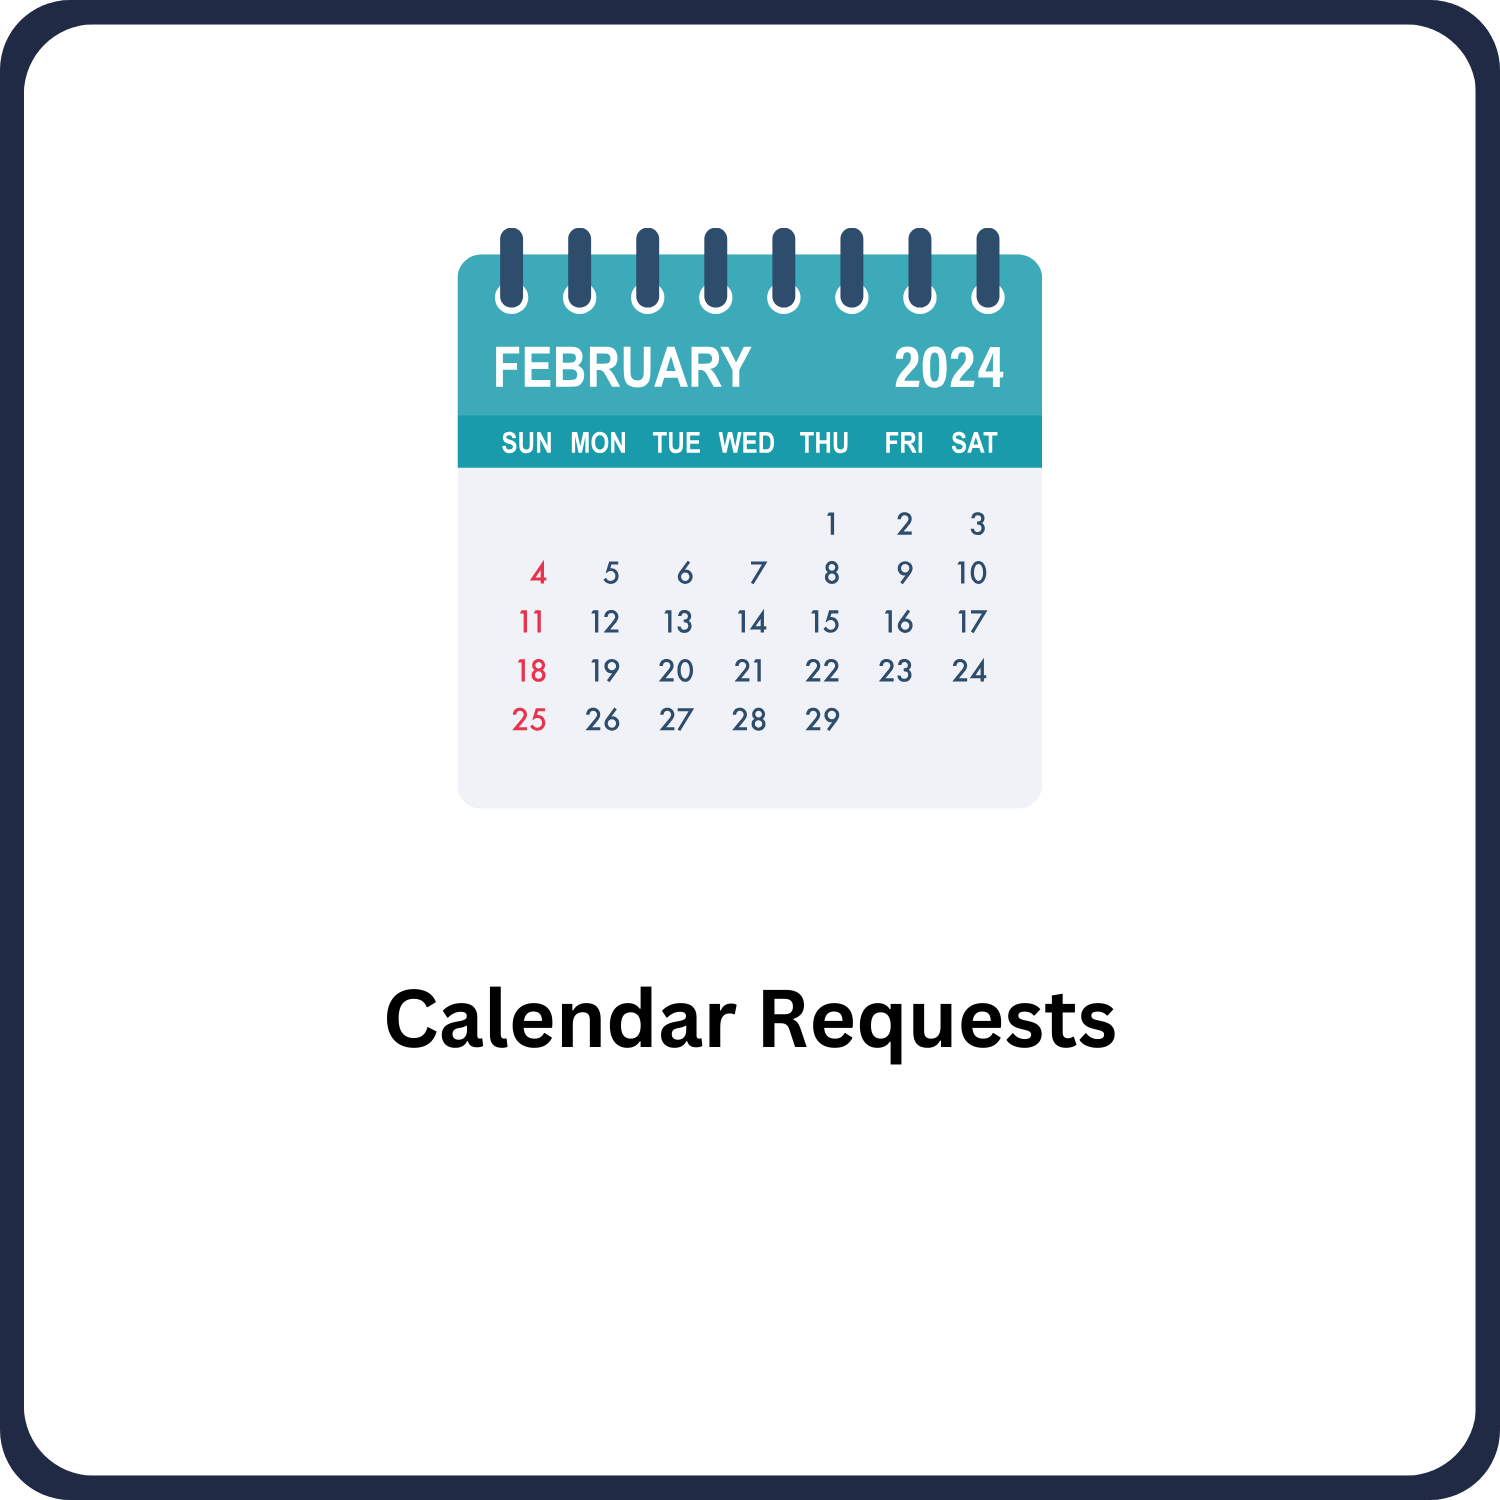 Calendar Requests